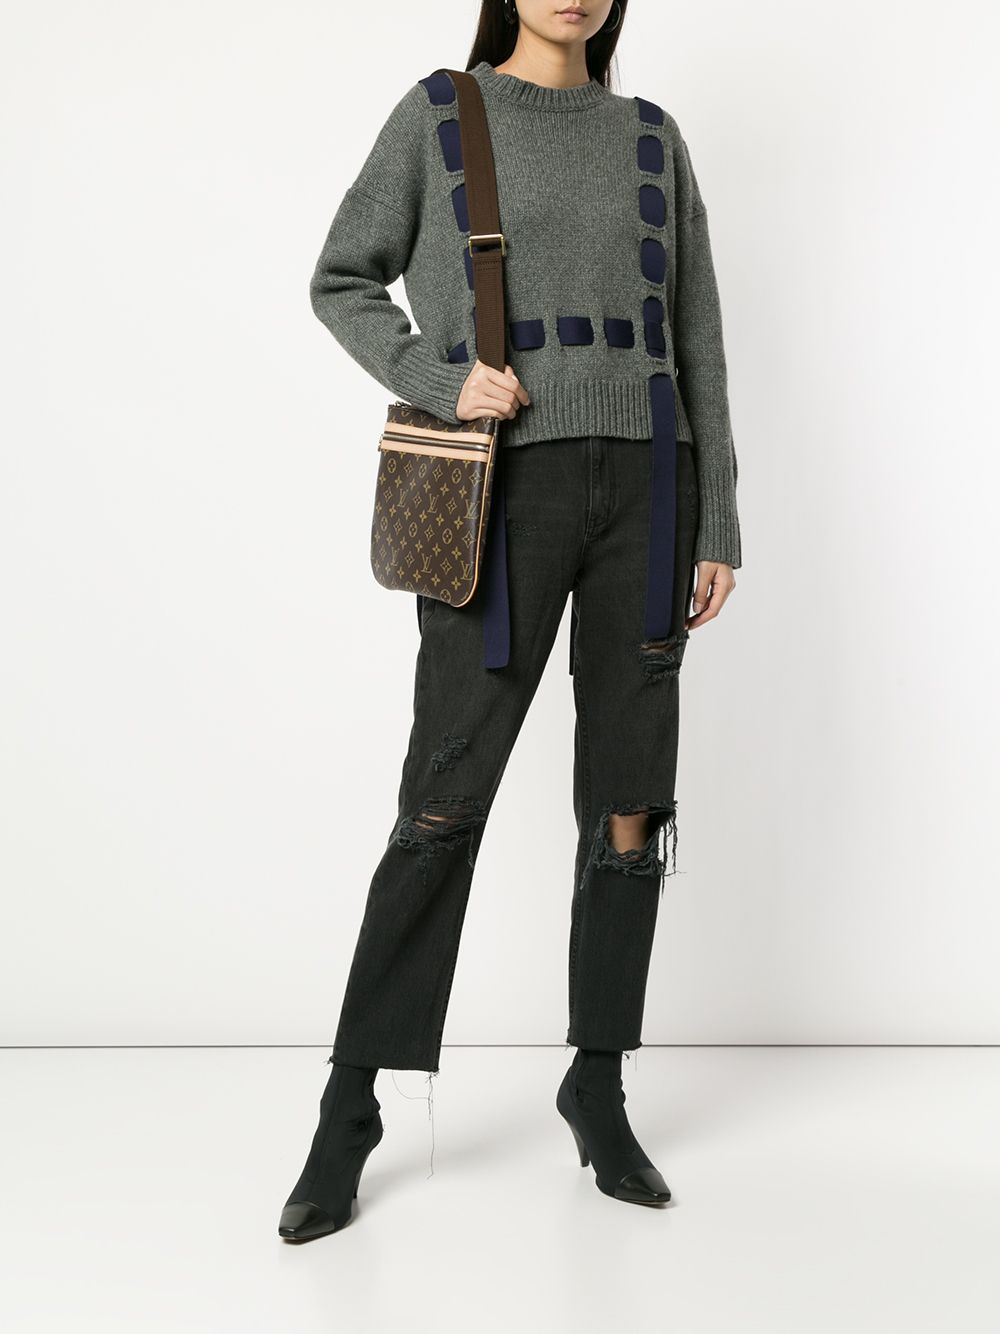 Louis Vuitton Pochette Bosphore Shoulder Bag - Farfetch